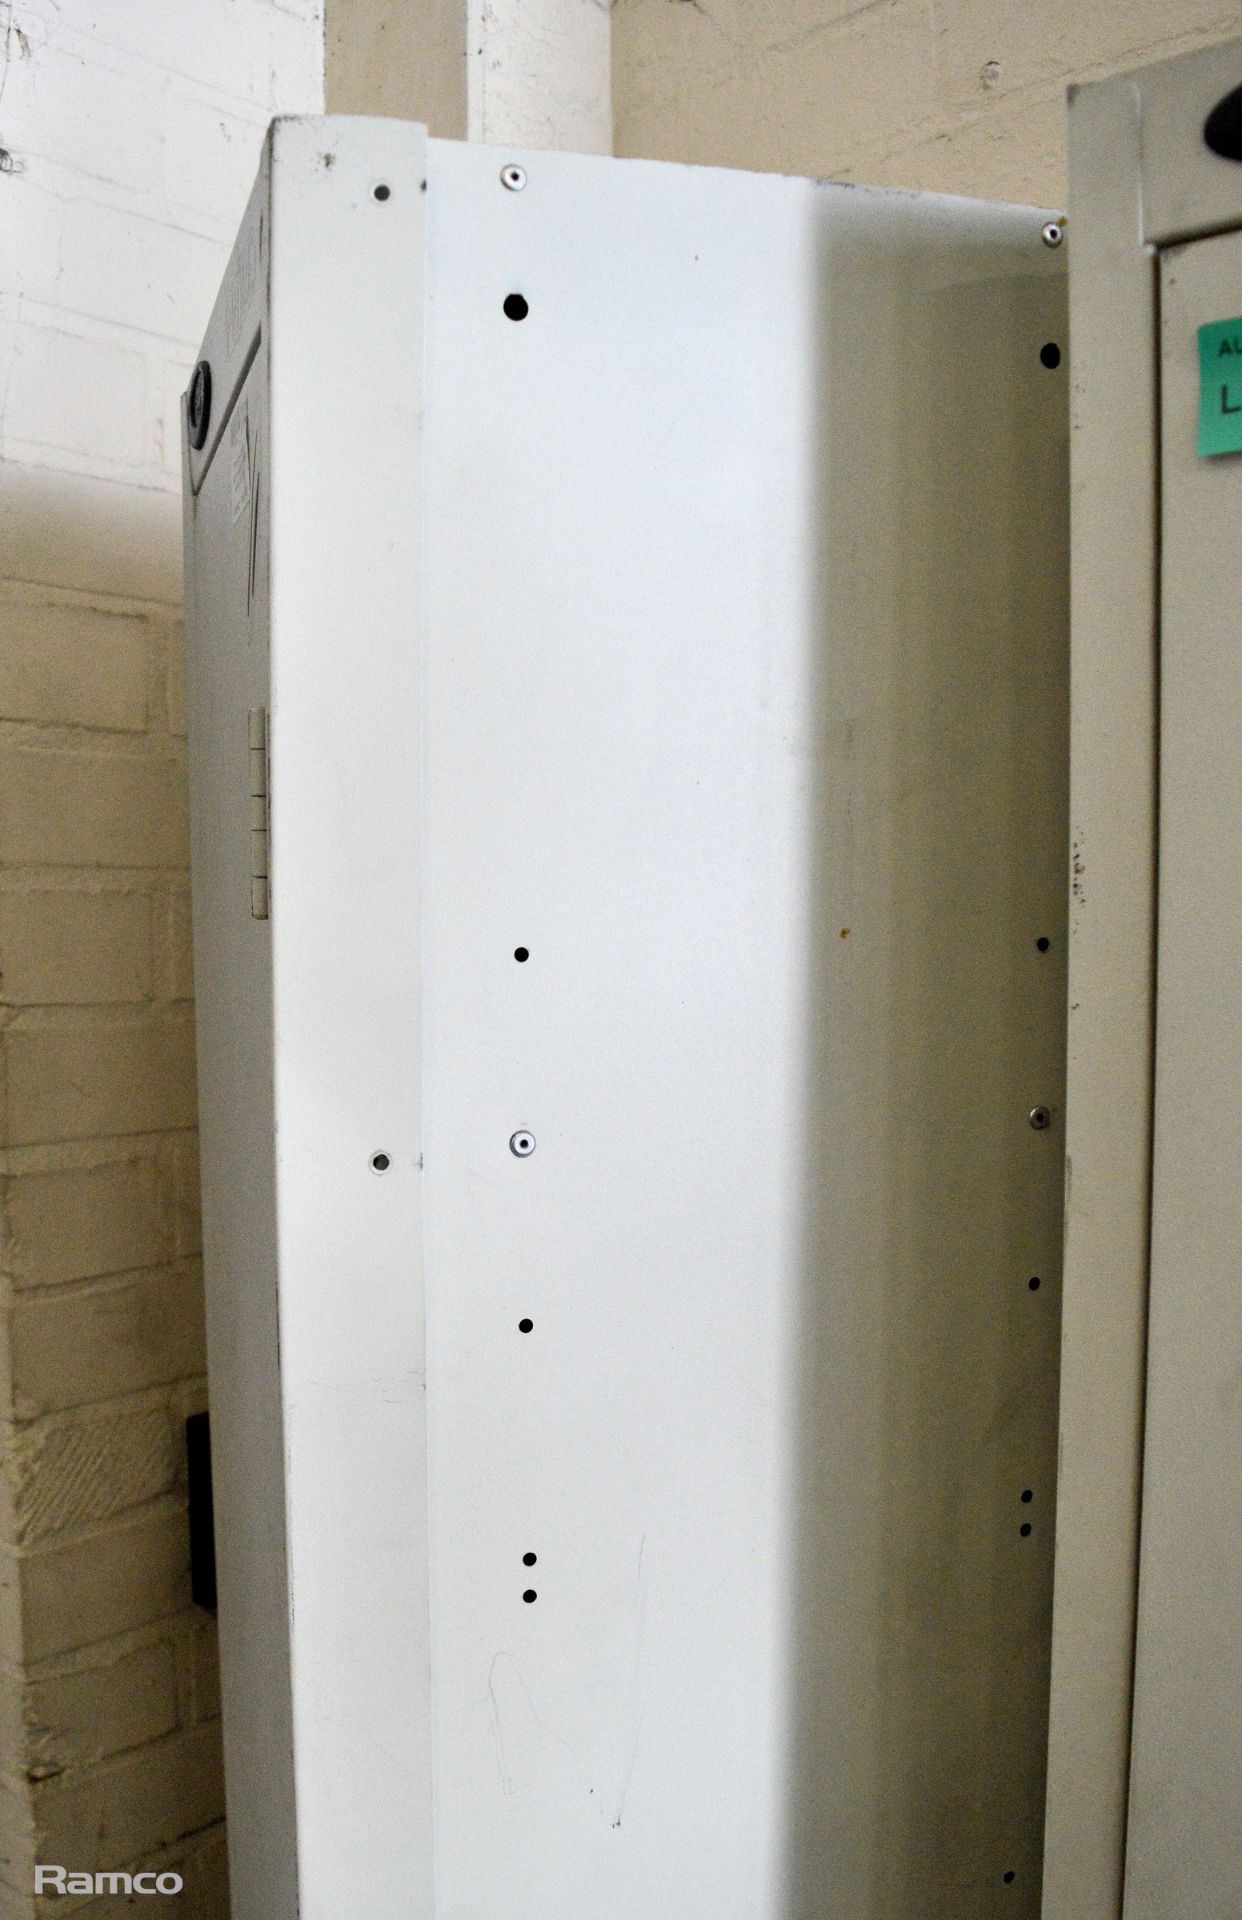 2x Probe Active Coat free standing single door locker - no keys 30x30x180 - Image 4 of 4